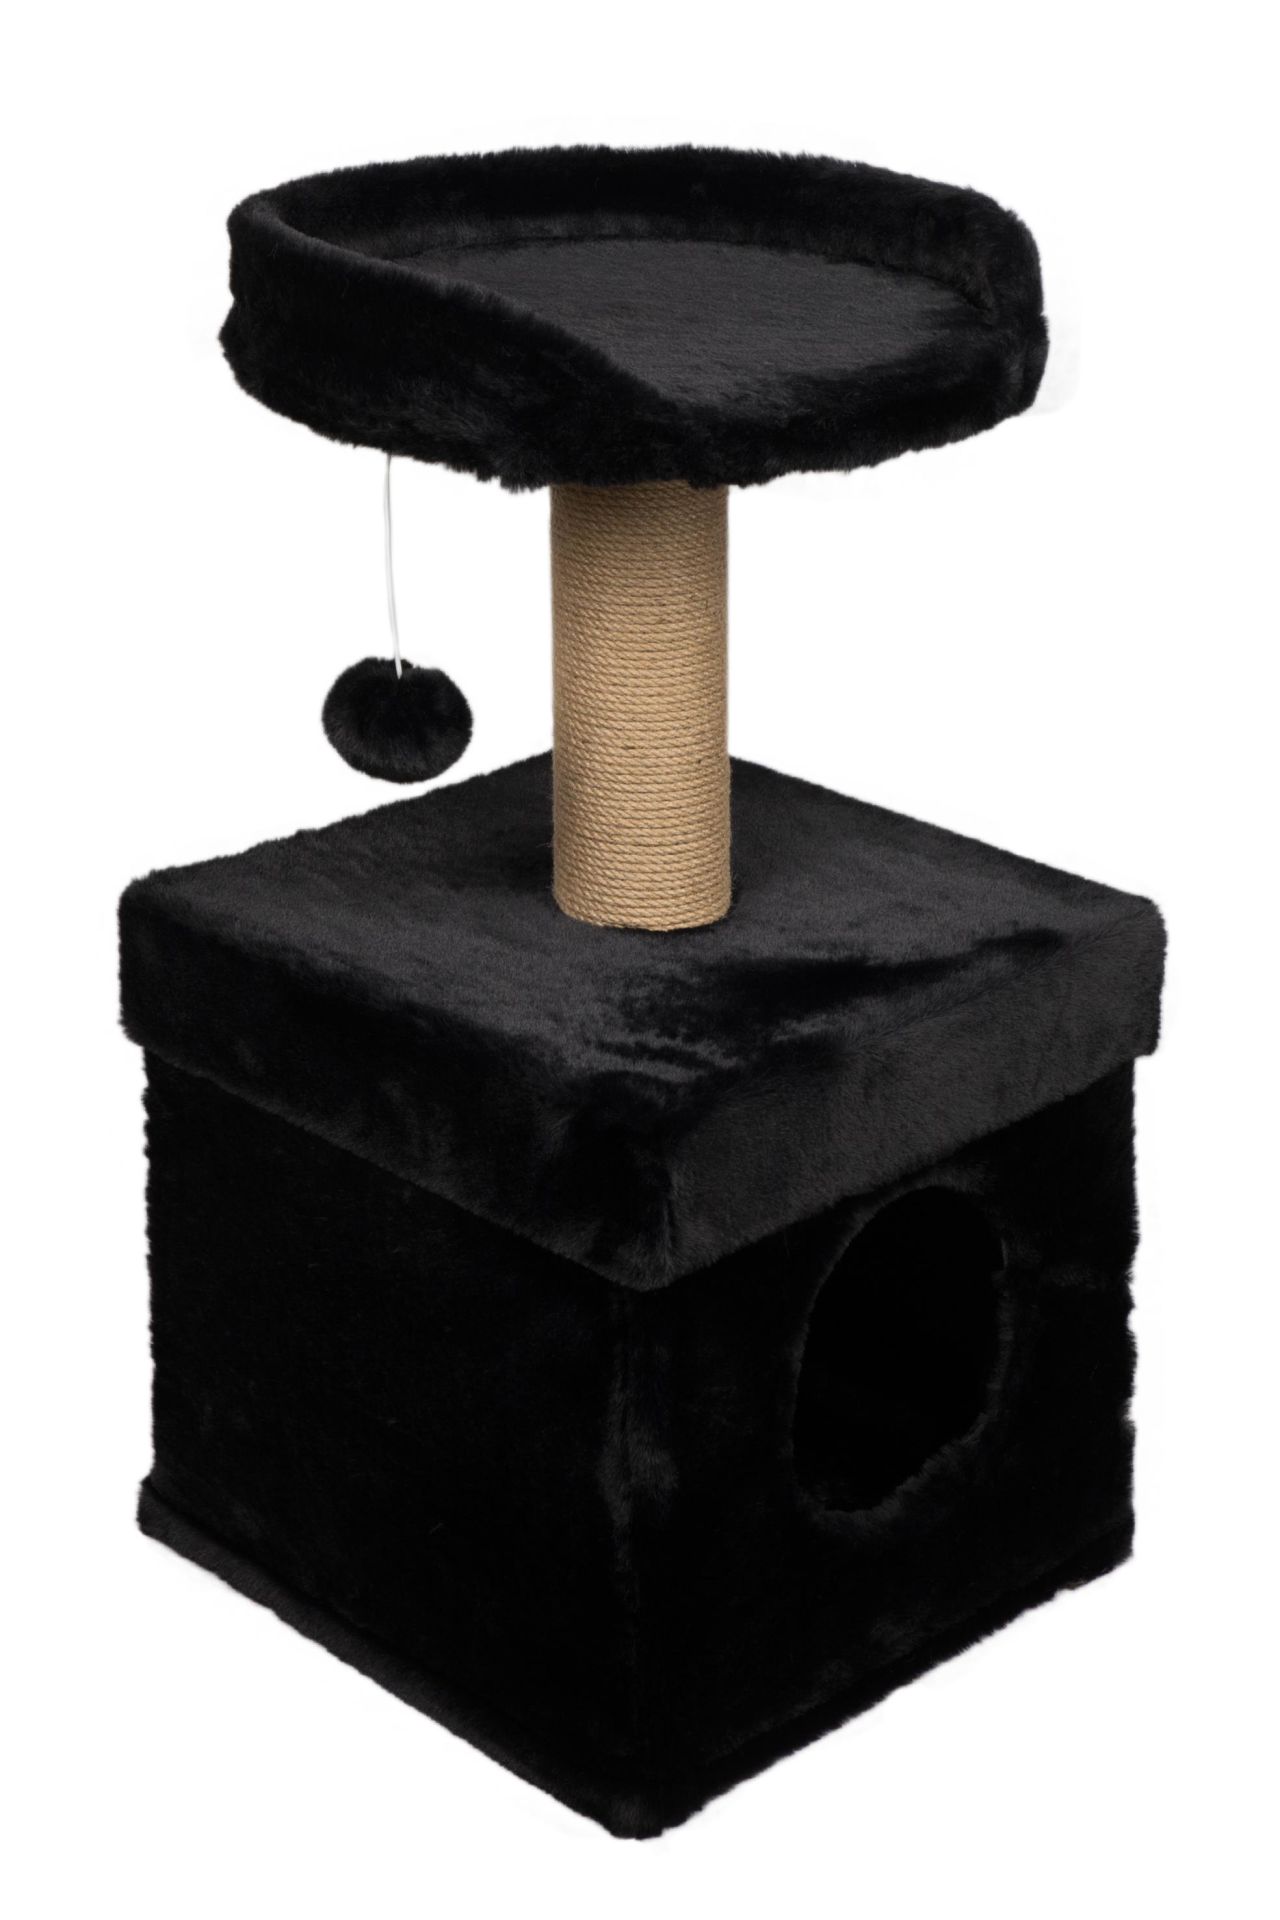 Dubex 39x39x72 cm Kedi Oyun Evi ve Tırmalama Platformu Siyah